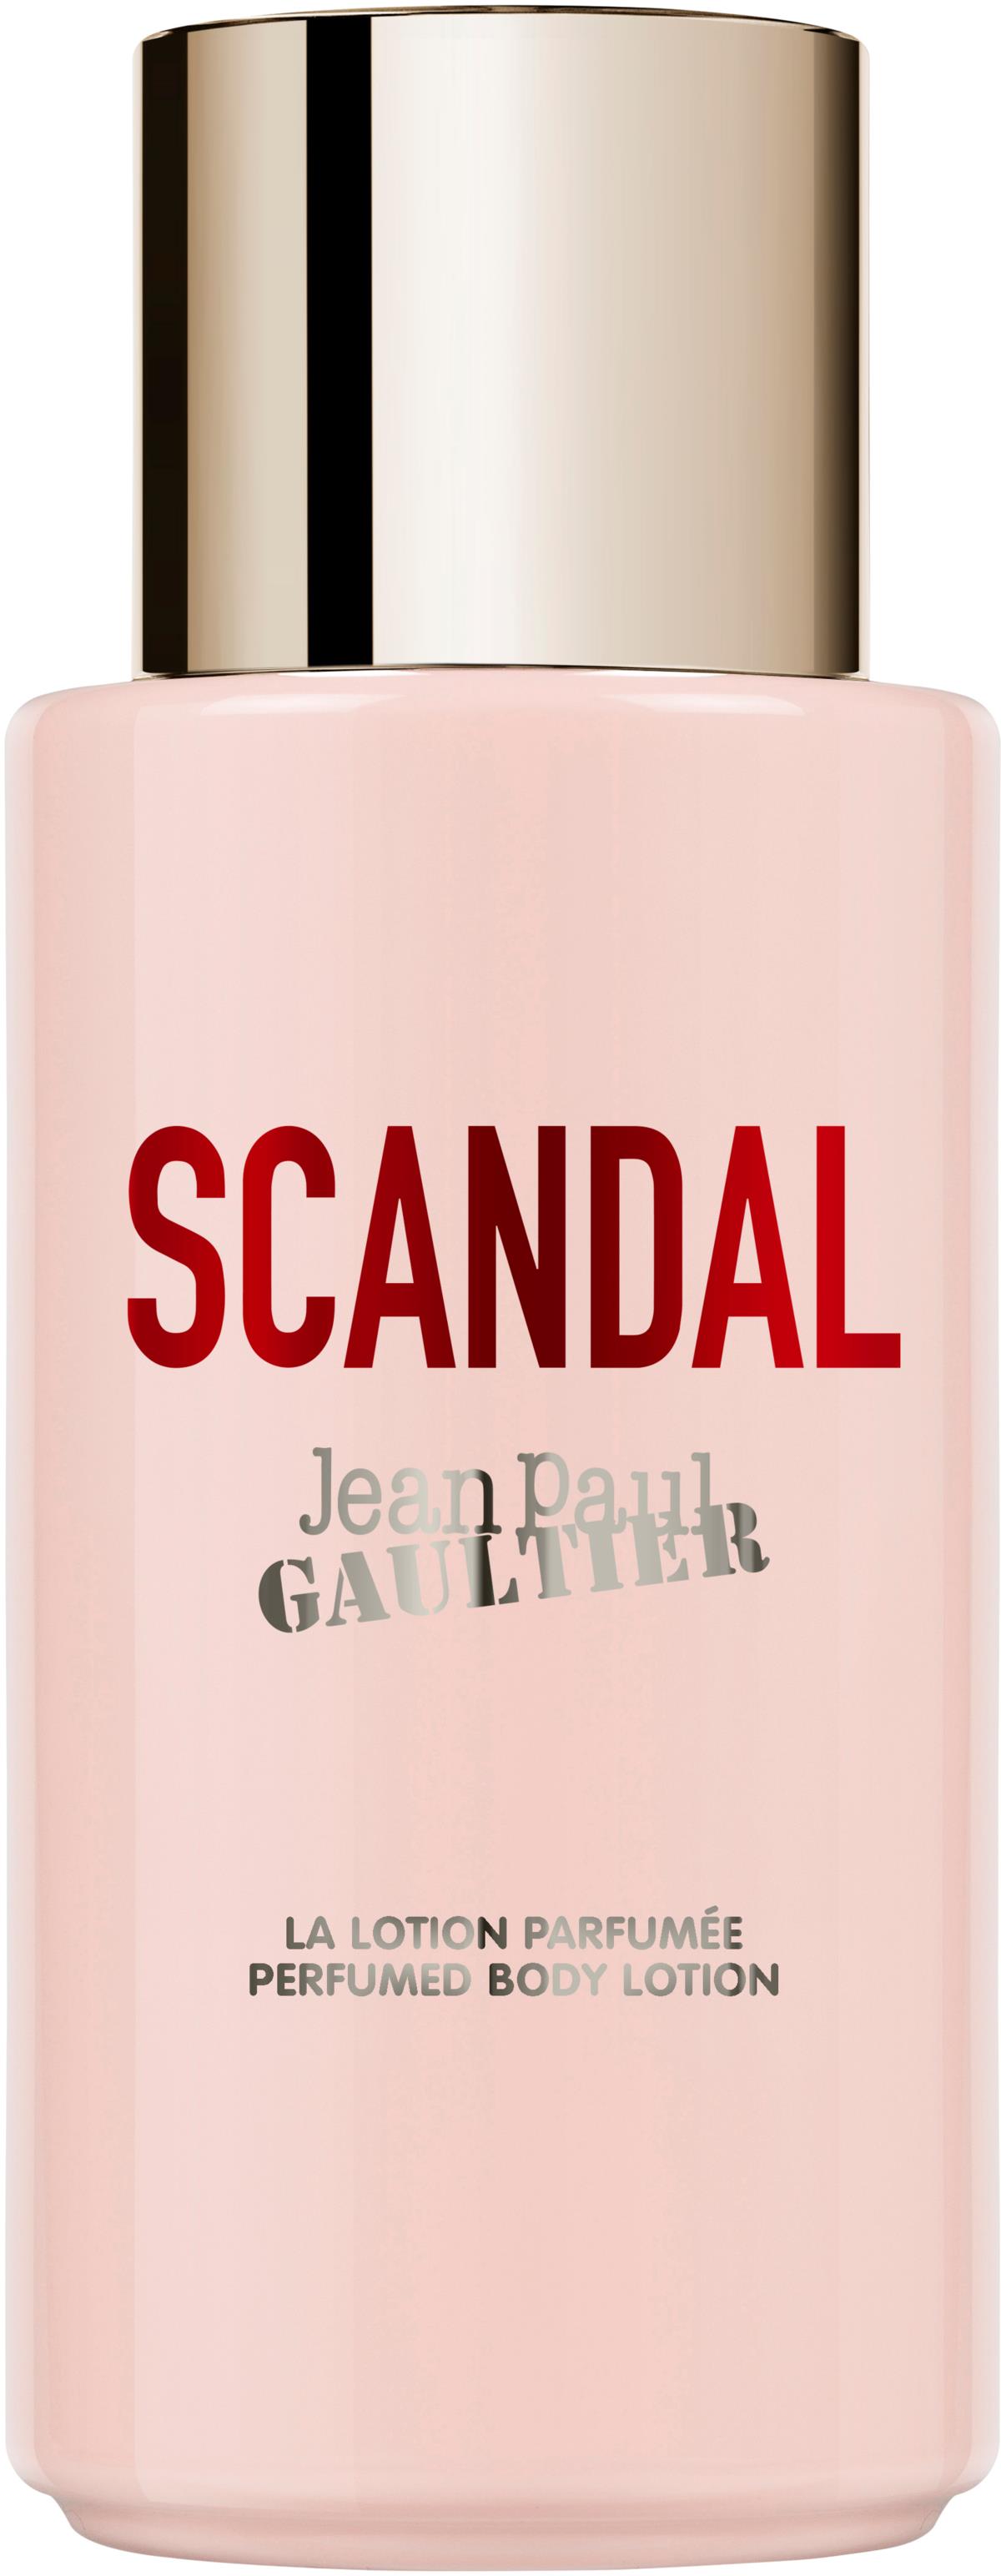 Jean Paul Gaultier Scandal Body Lotion 200 ml | lyko.com